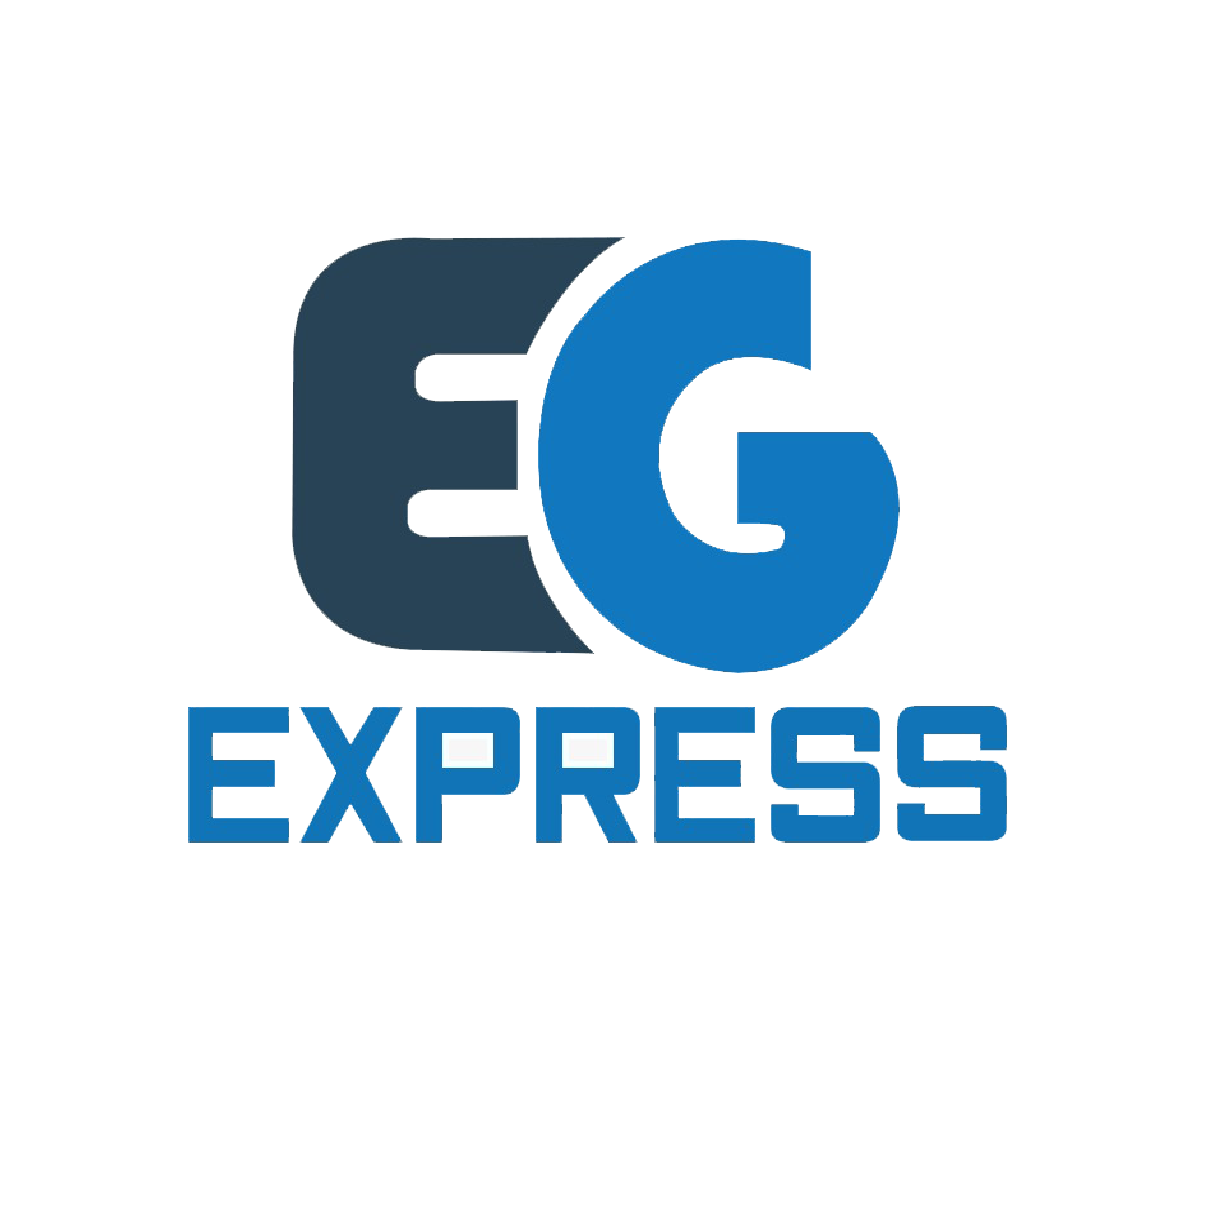 EG Express